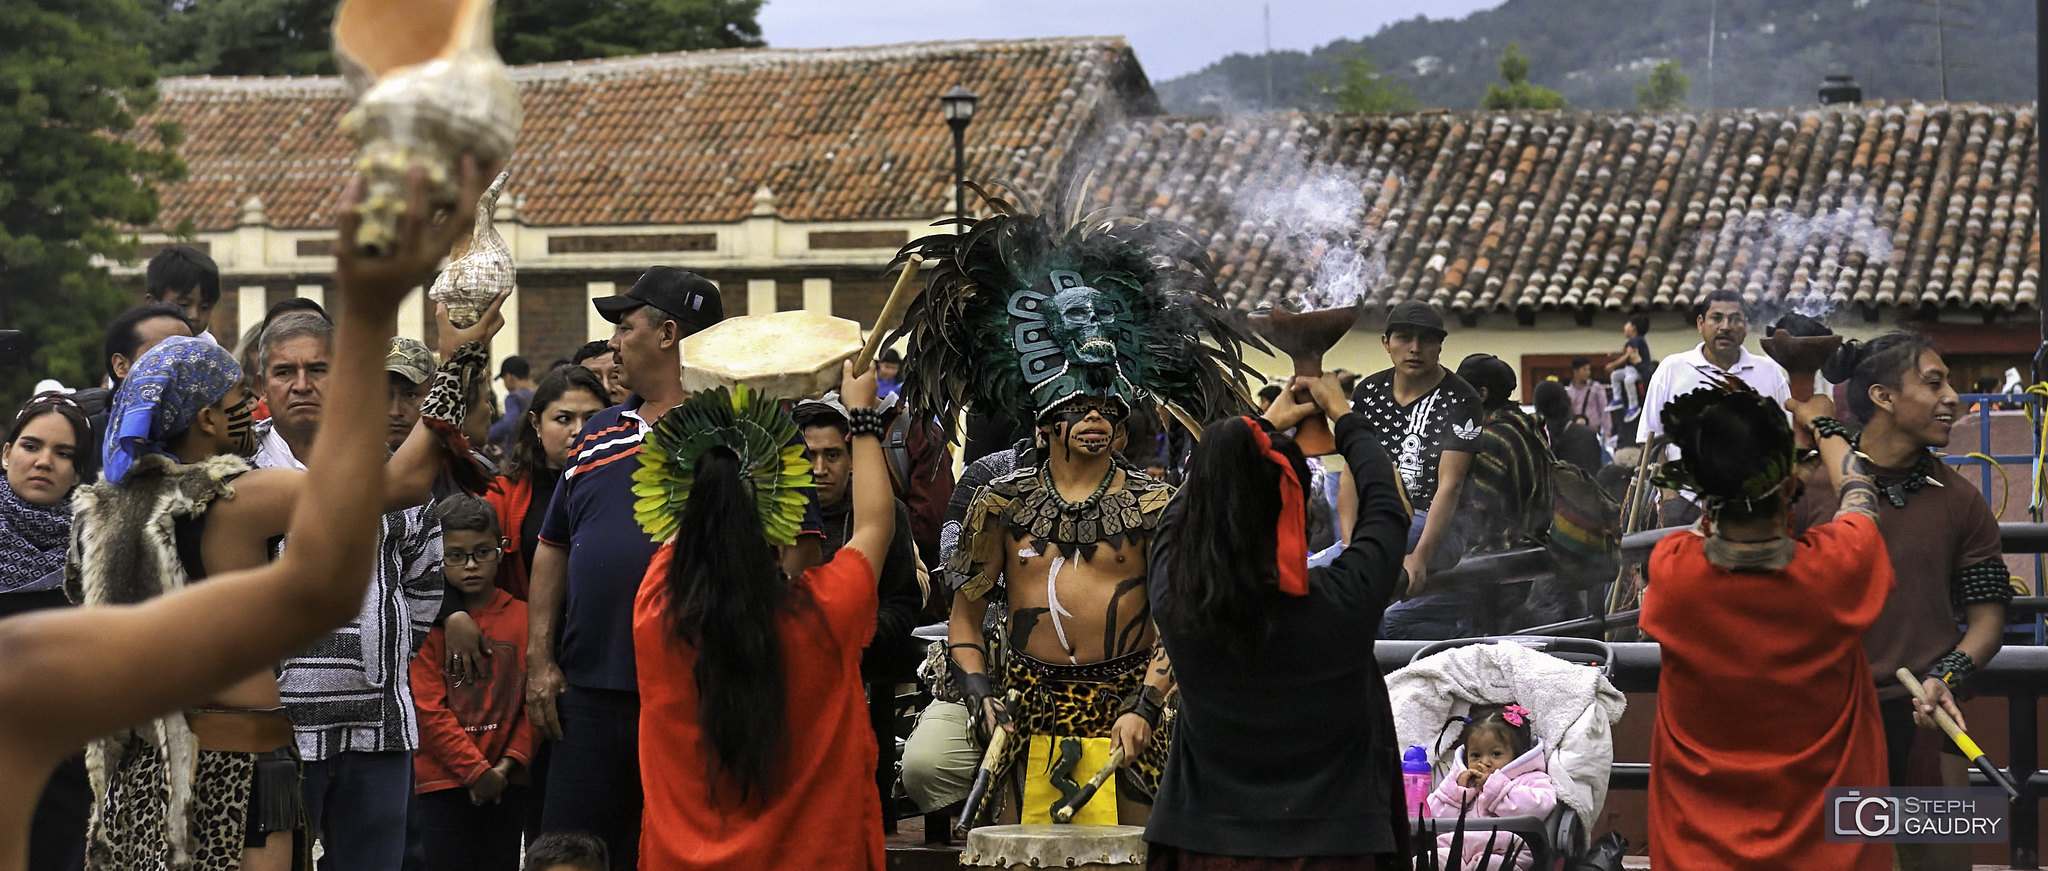 Danses rituelles à San Cristóbal de las Casas [Klicken Sie hier, um die Diashow zu starten]